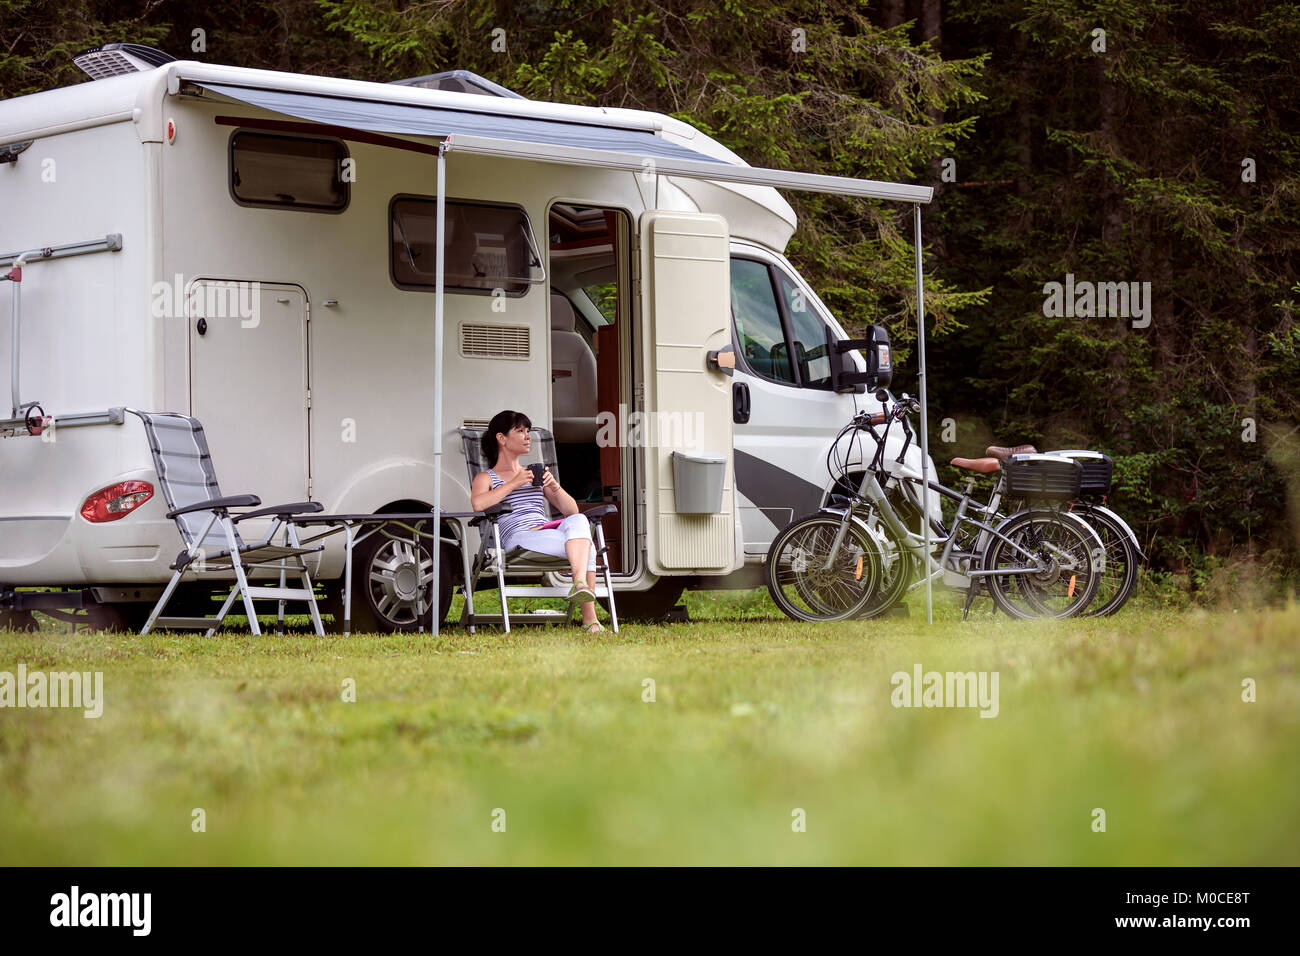 Femme se tient debout avec une tasse de café près de la camionnette. Location caravane Vacances. Vacances famille vacances, voyages voyage en camping-car Banque D'Images